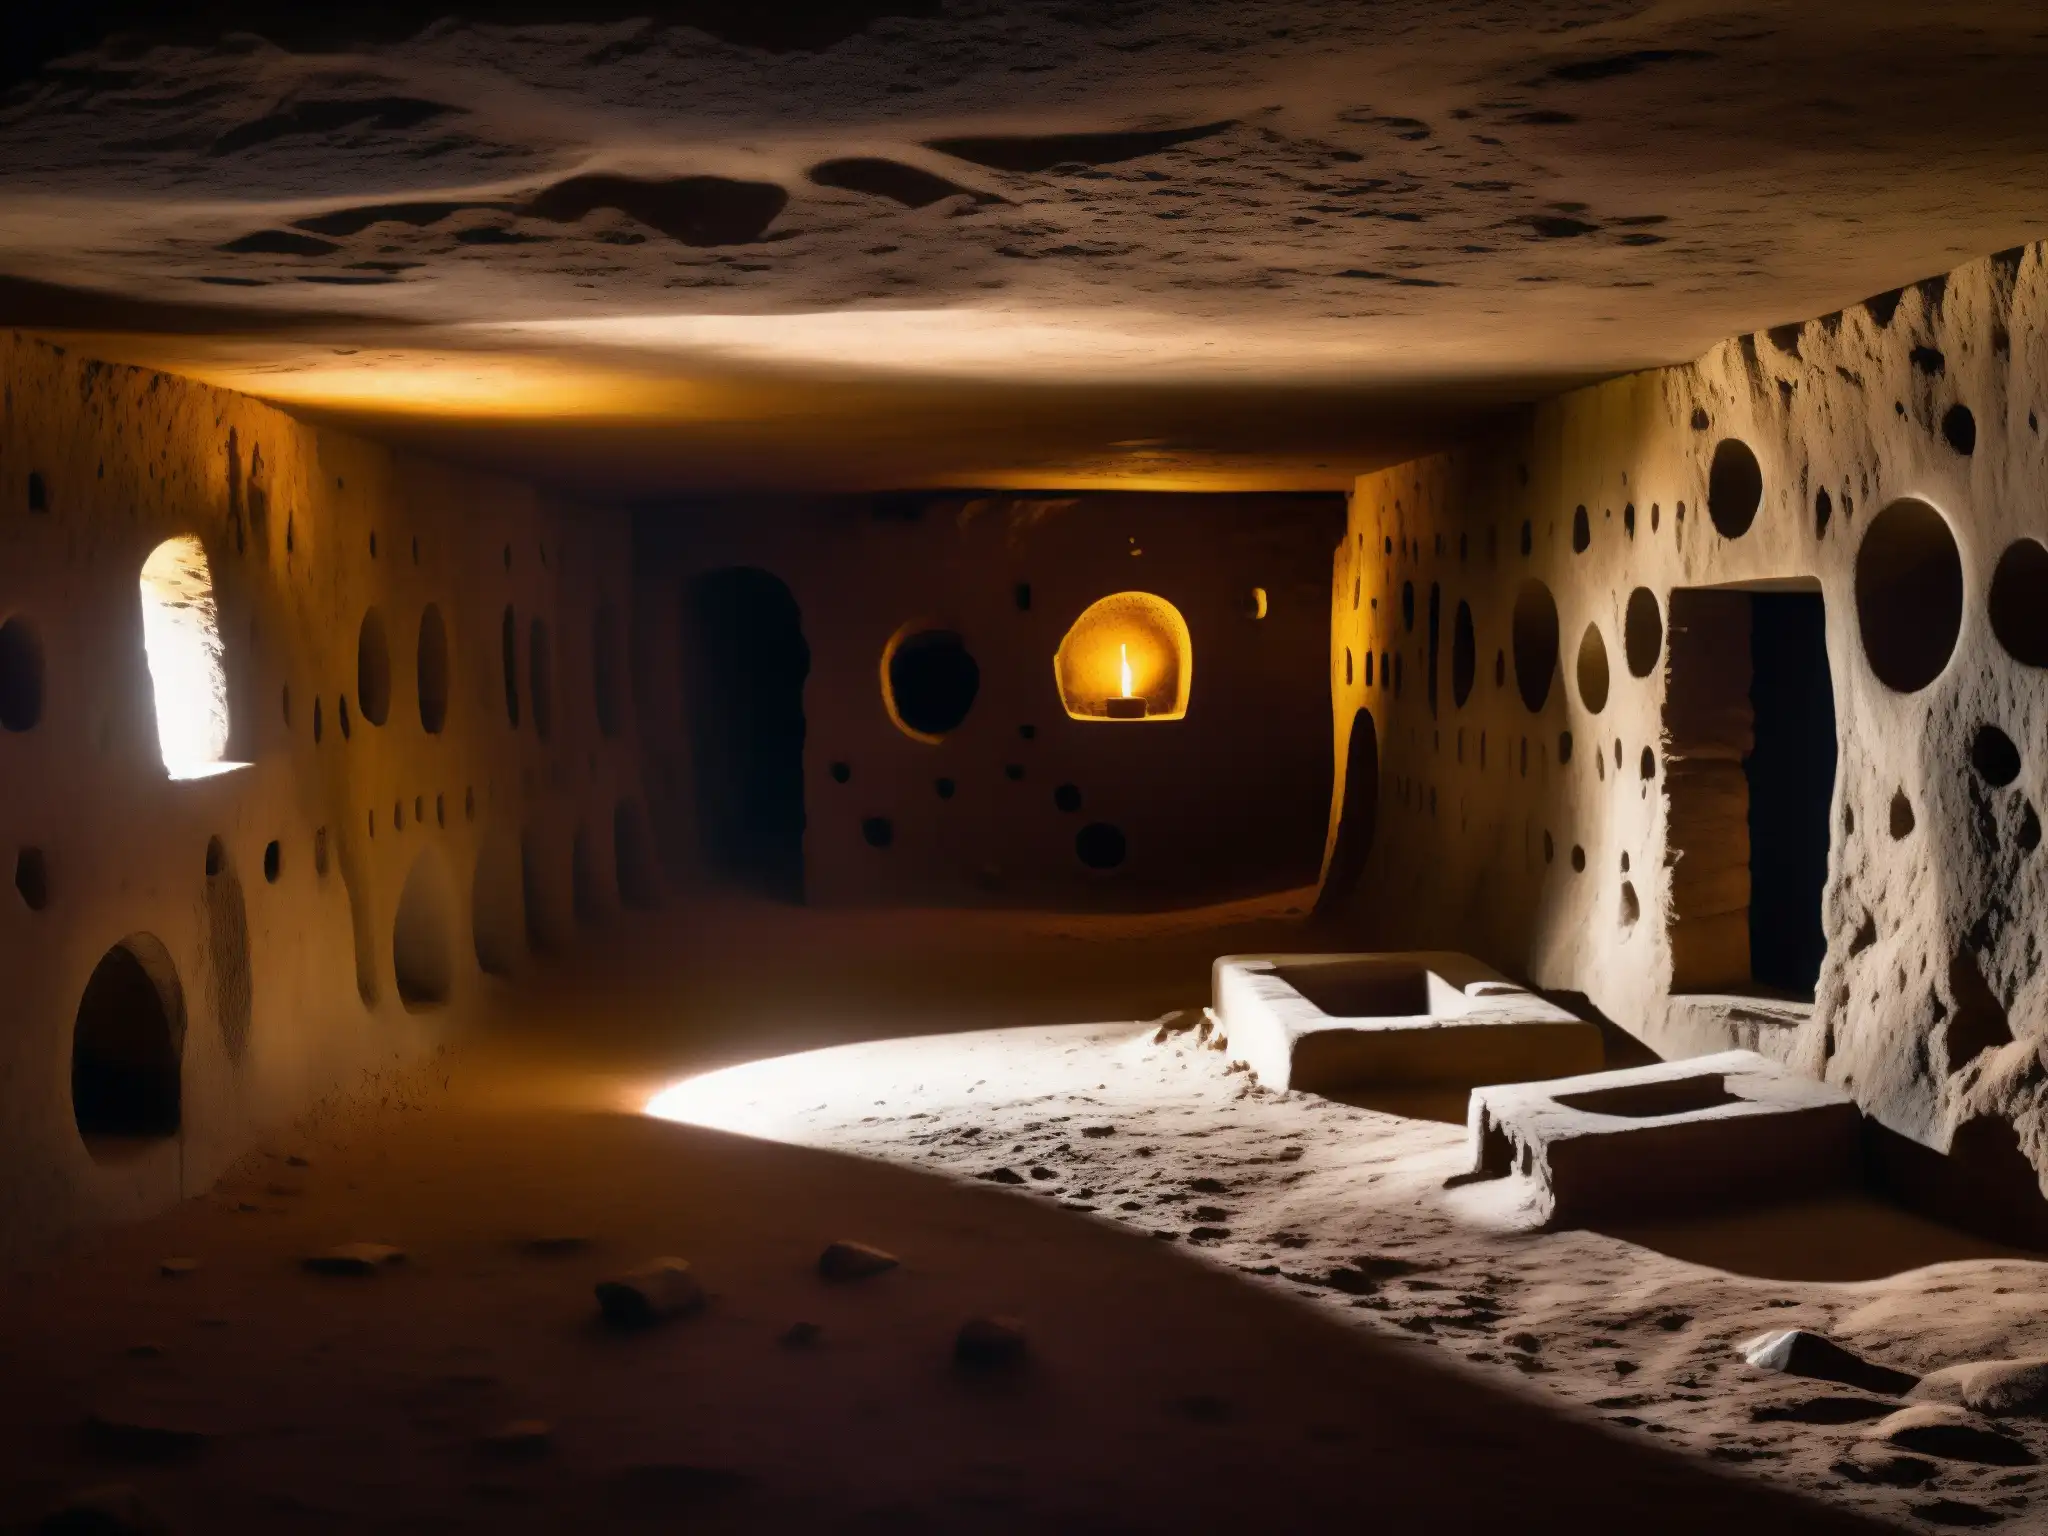 Imponente cámara subterránea en Durango, con símbolos y artefactos rituales